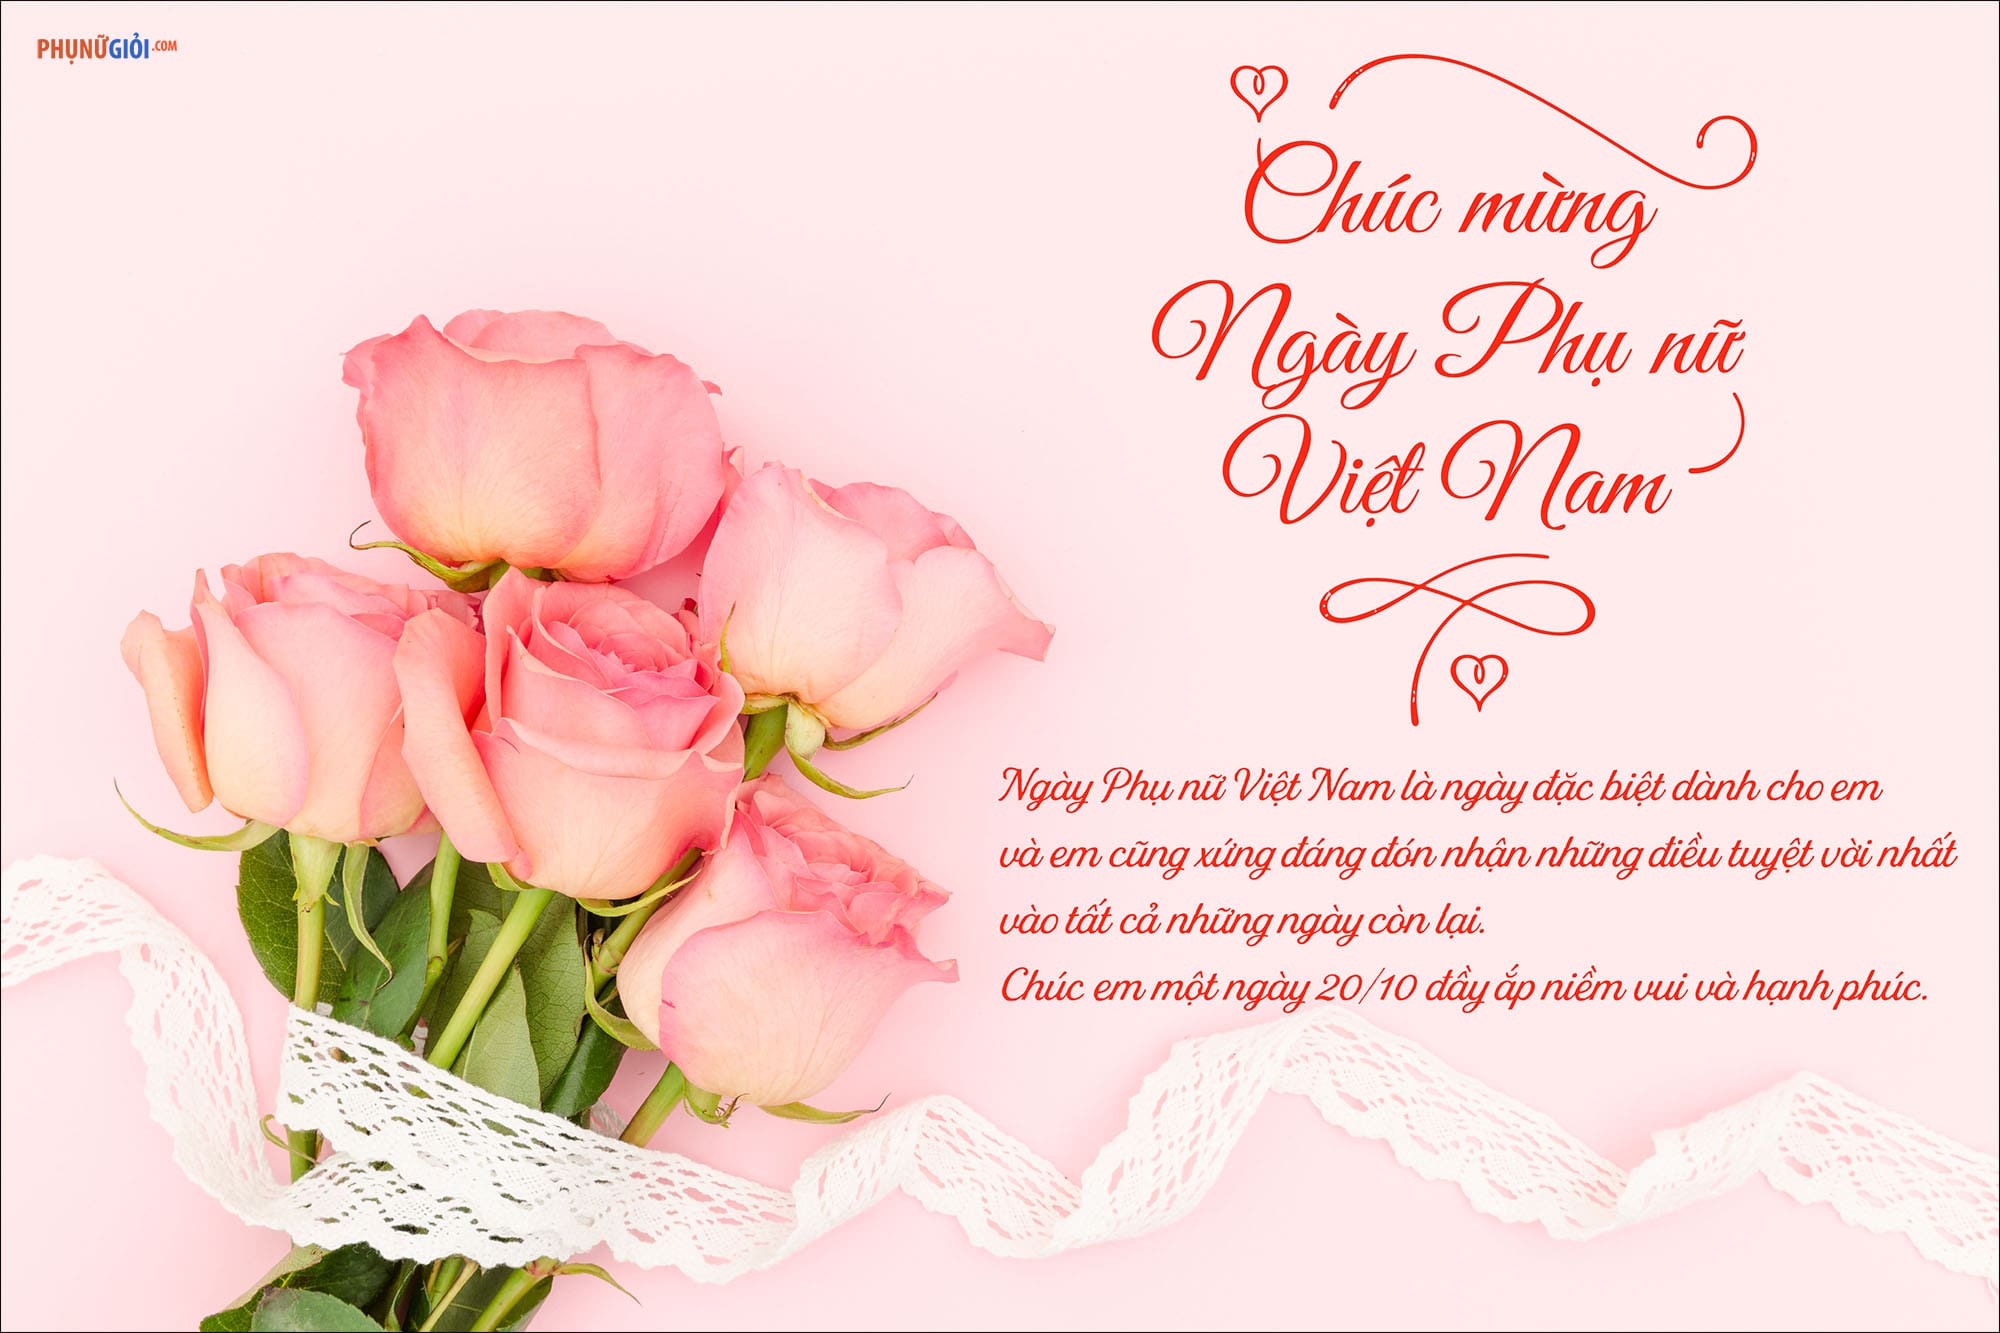 Thiệp chúc mừng Ngày Phụ nữ Việt Nam là món quà ý nghĩa dành tặng cho những người phụ nữ quan trọng trong cuộc đời. Hãy cùng xem chi tiết hình ảnh để cảm nhận sự đẹp và tinh tế của những thiệp chúc mừng này.